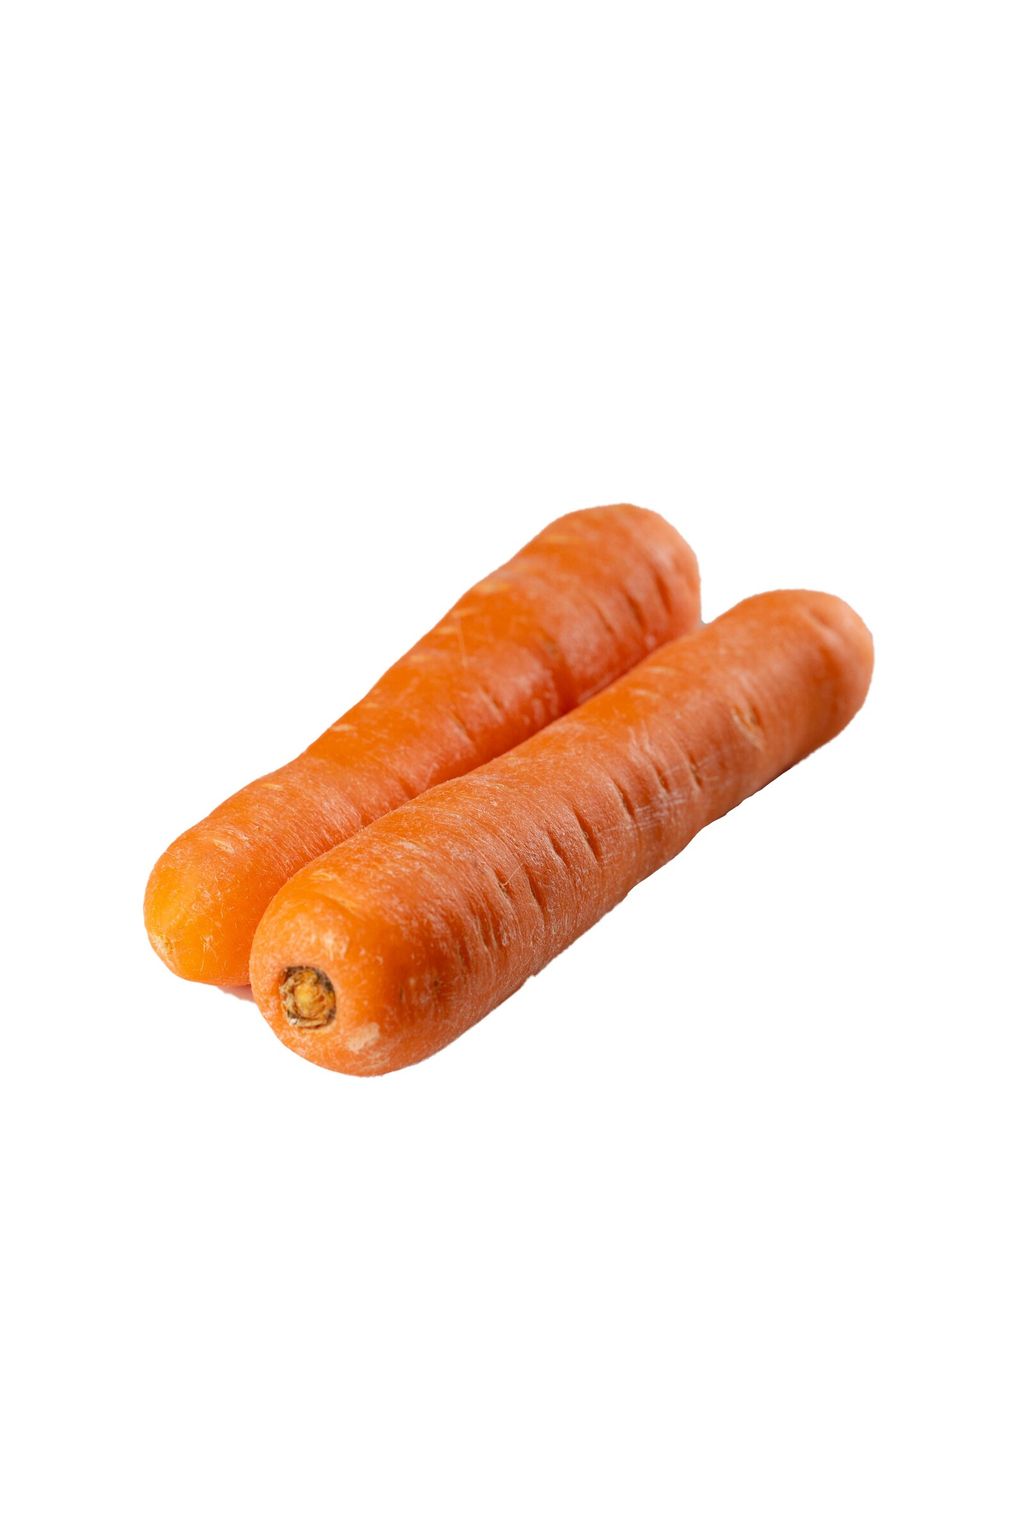 Carrot 1 (White).jpg